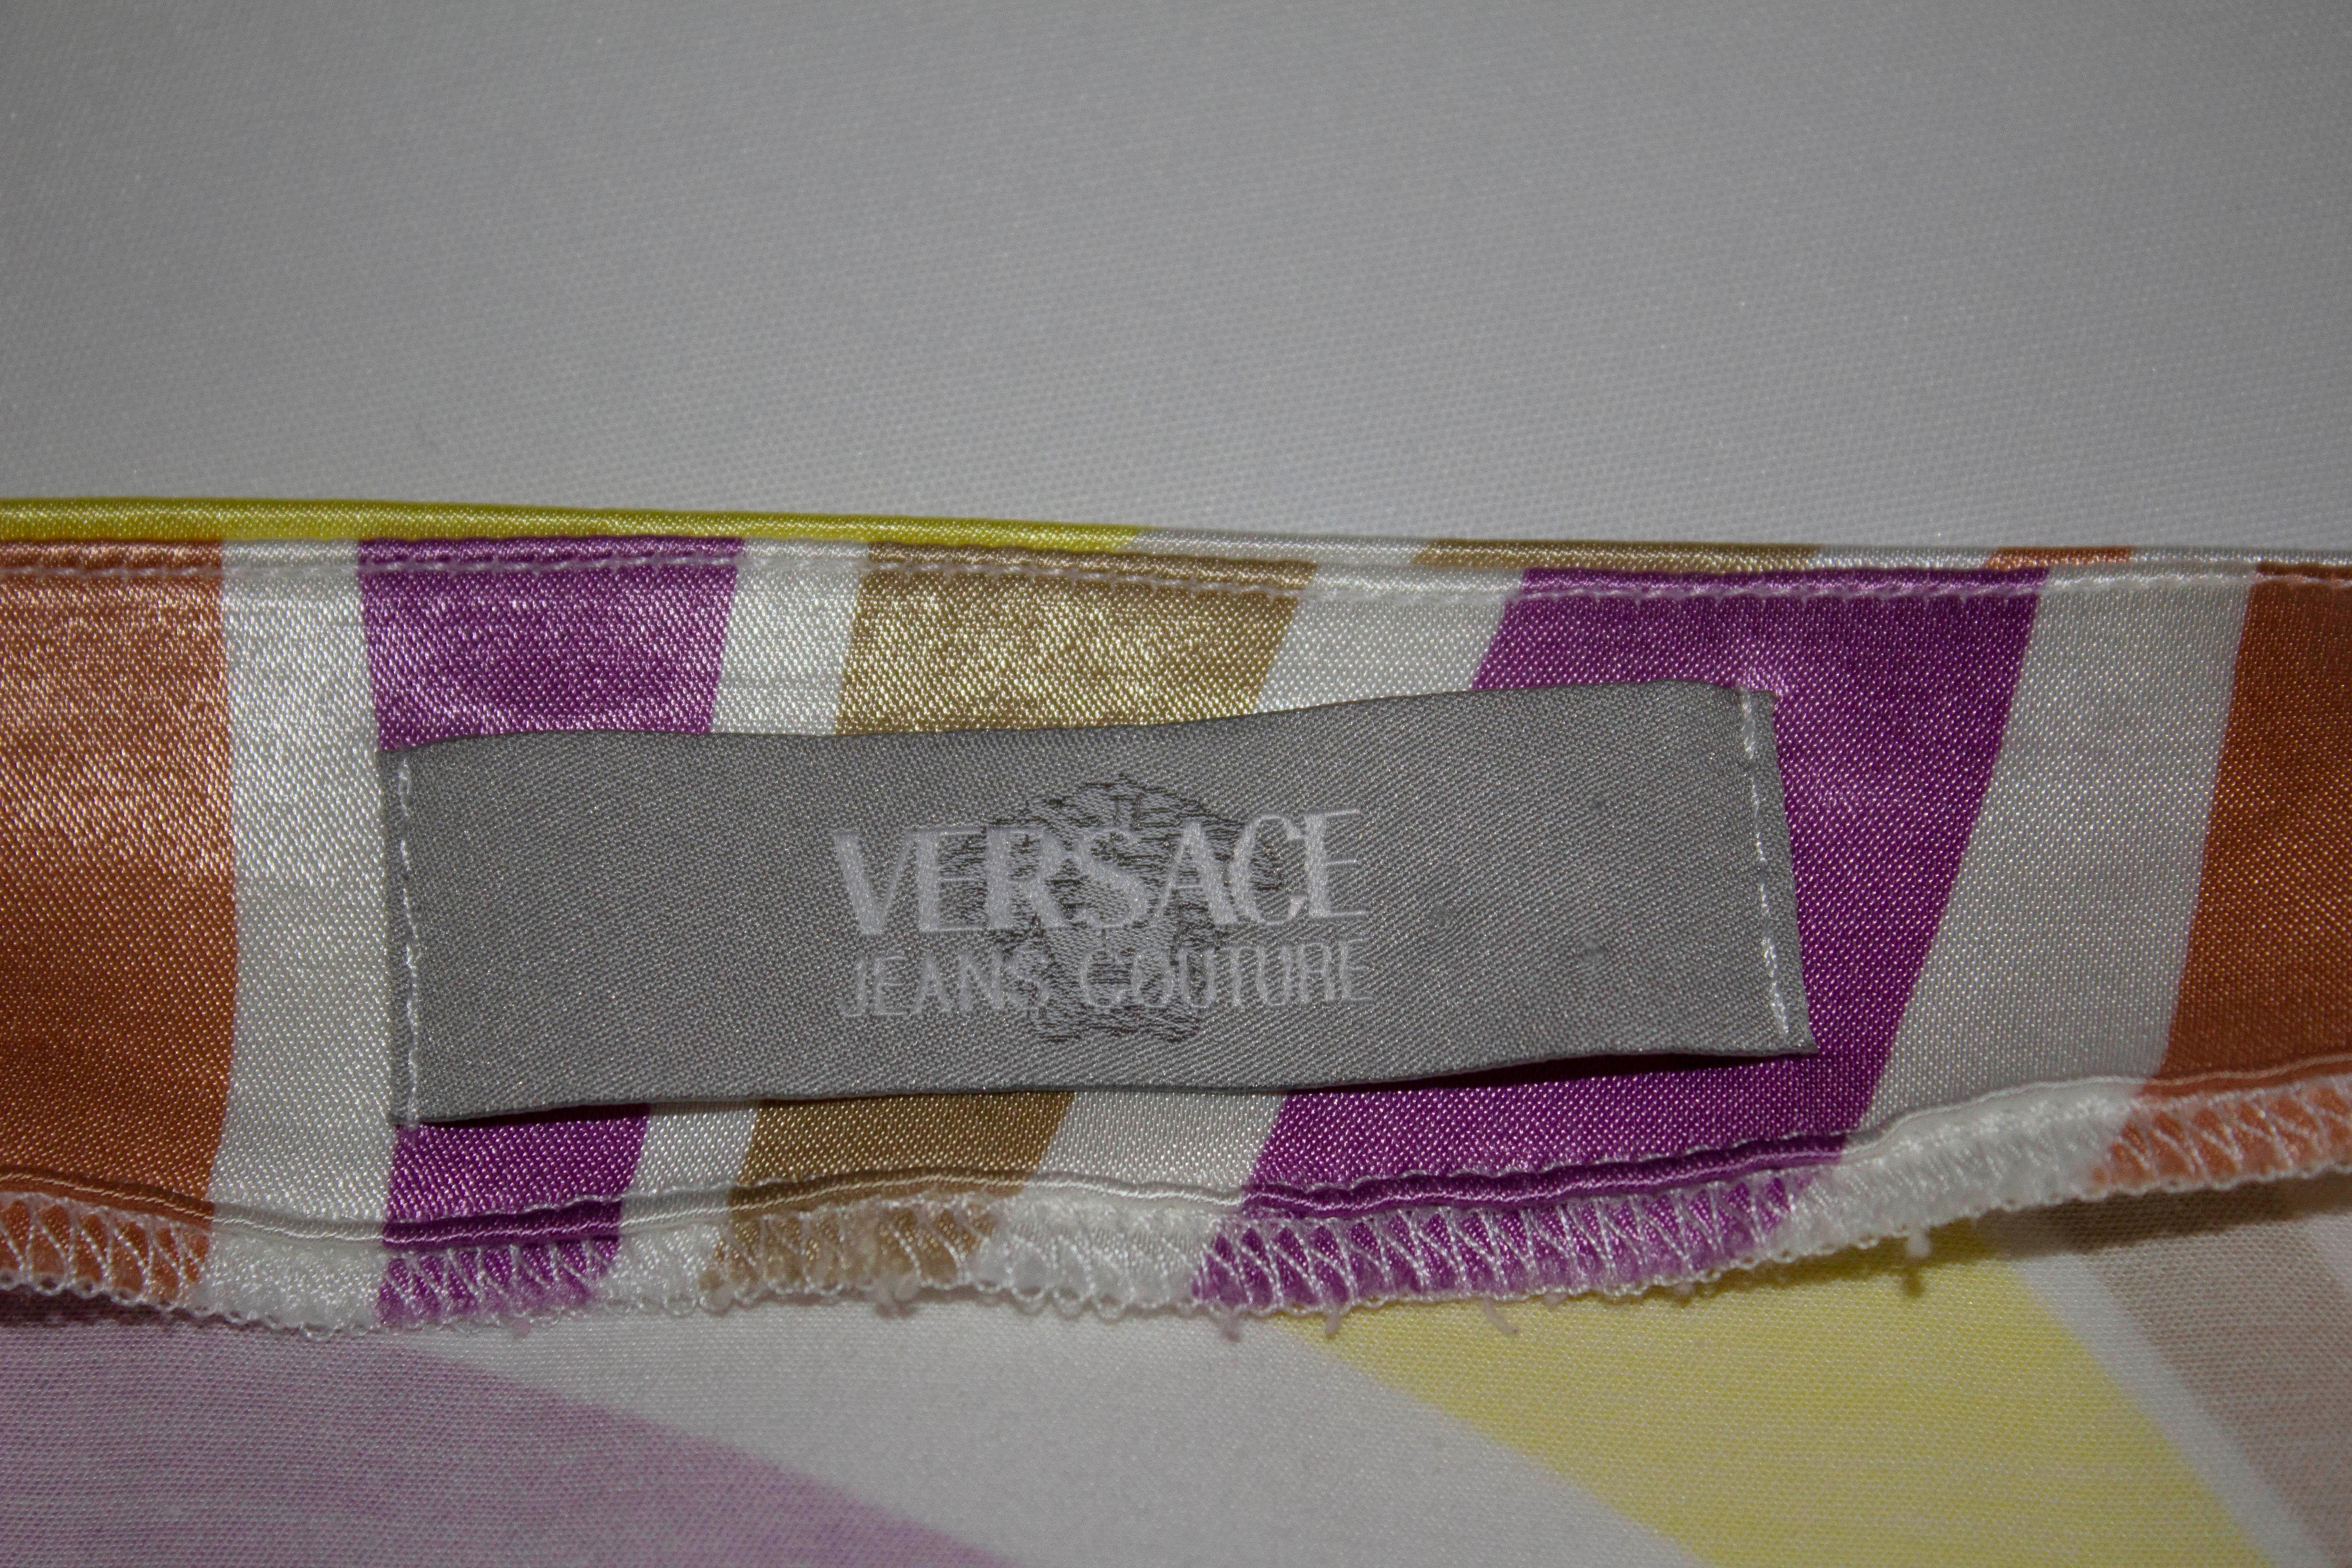 Une jupe d'été amusante de Versace, ligne Jeans Couture.  Sur  un mélange de coton, et un magnifique imprimé multicolore, la jupe a une ouverture zippée sur le côté et une fente de 11,5 cm  sur le côté gauche.

Etiqueté taille 32/46 , mesures ;